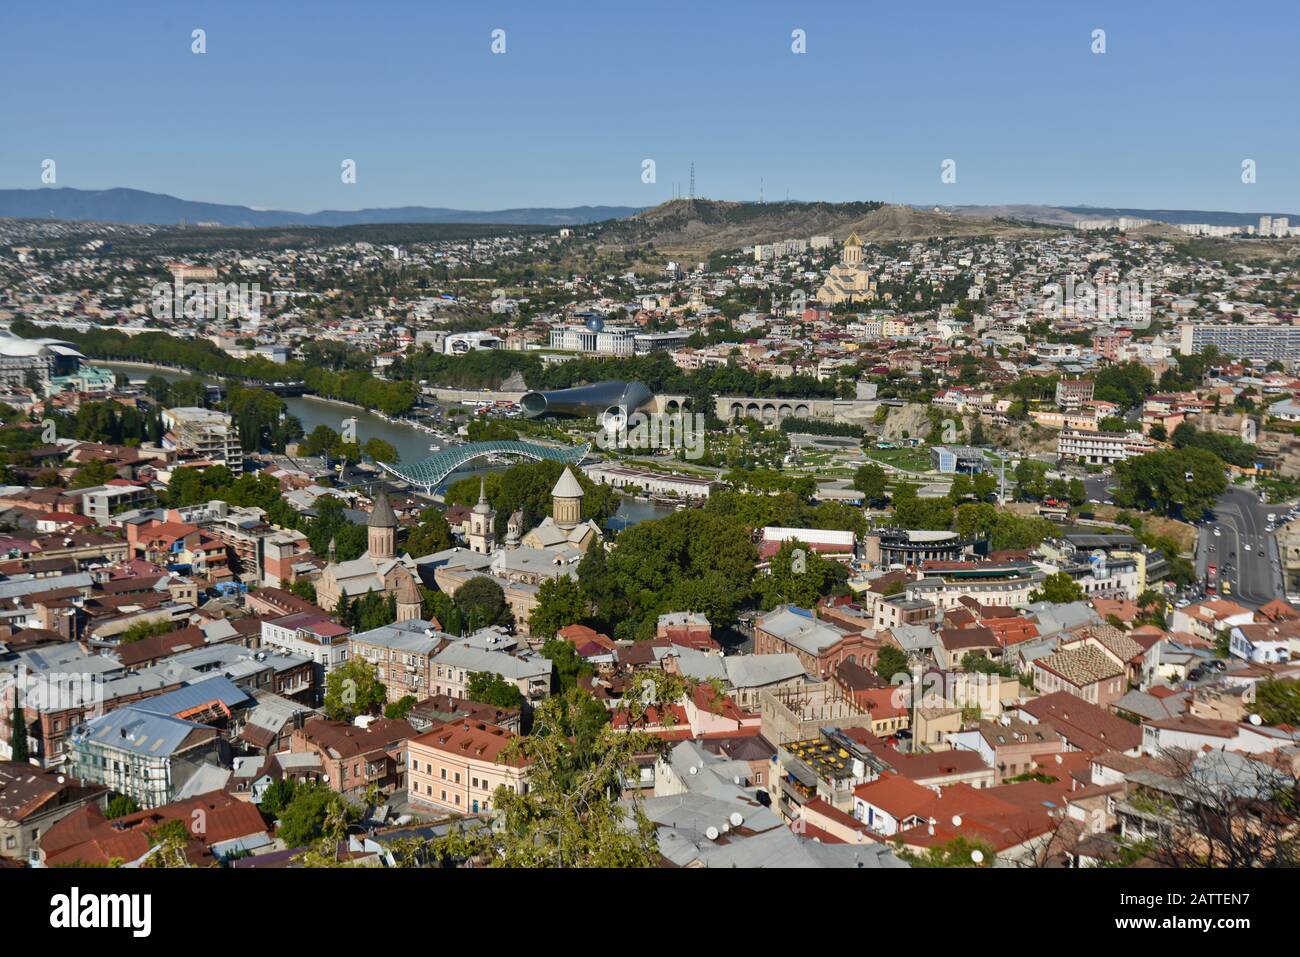 Vue panoramique à grand angle de Tbilissi depuis la colline de Sololaki, avec la rivière Kura traversant le centre-ville et les montagnes en arrière-plan (Géorgie) Banque D'Images